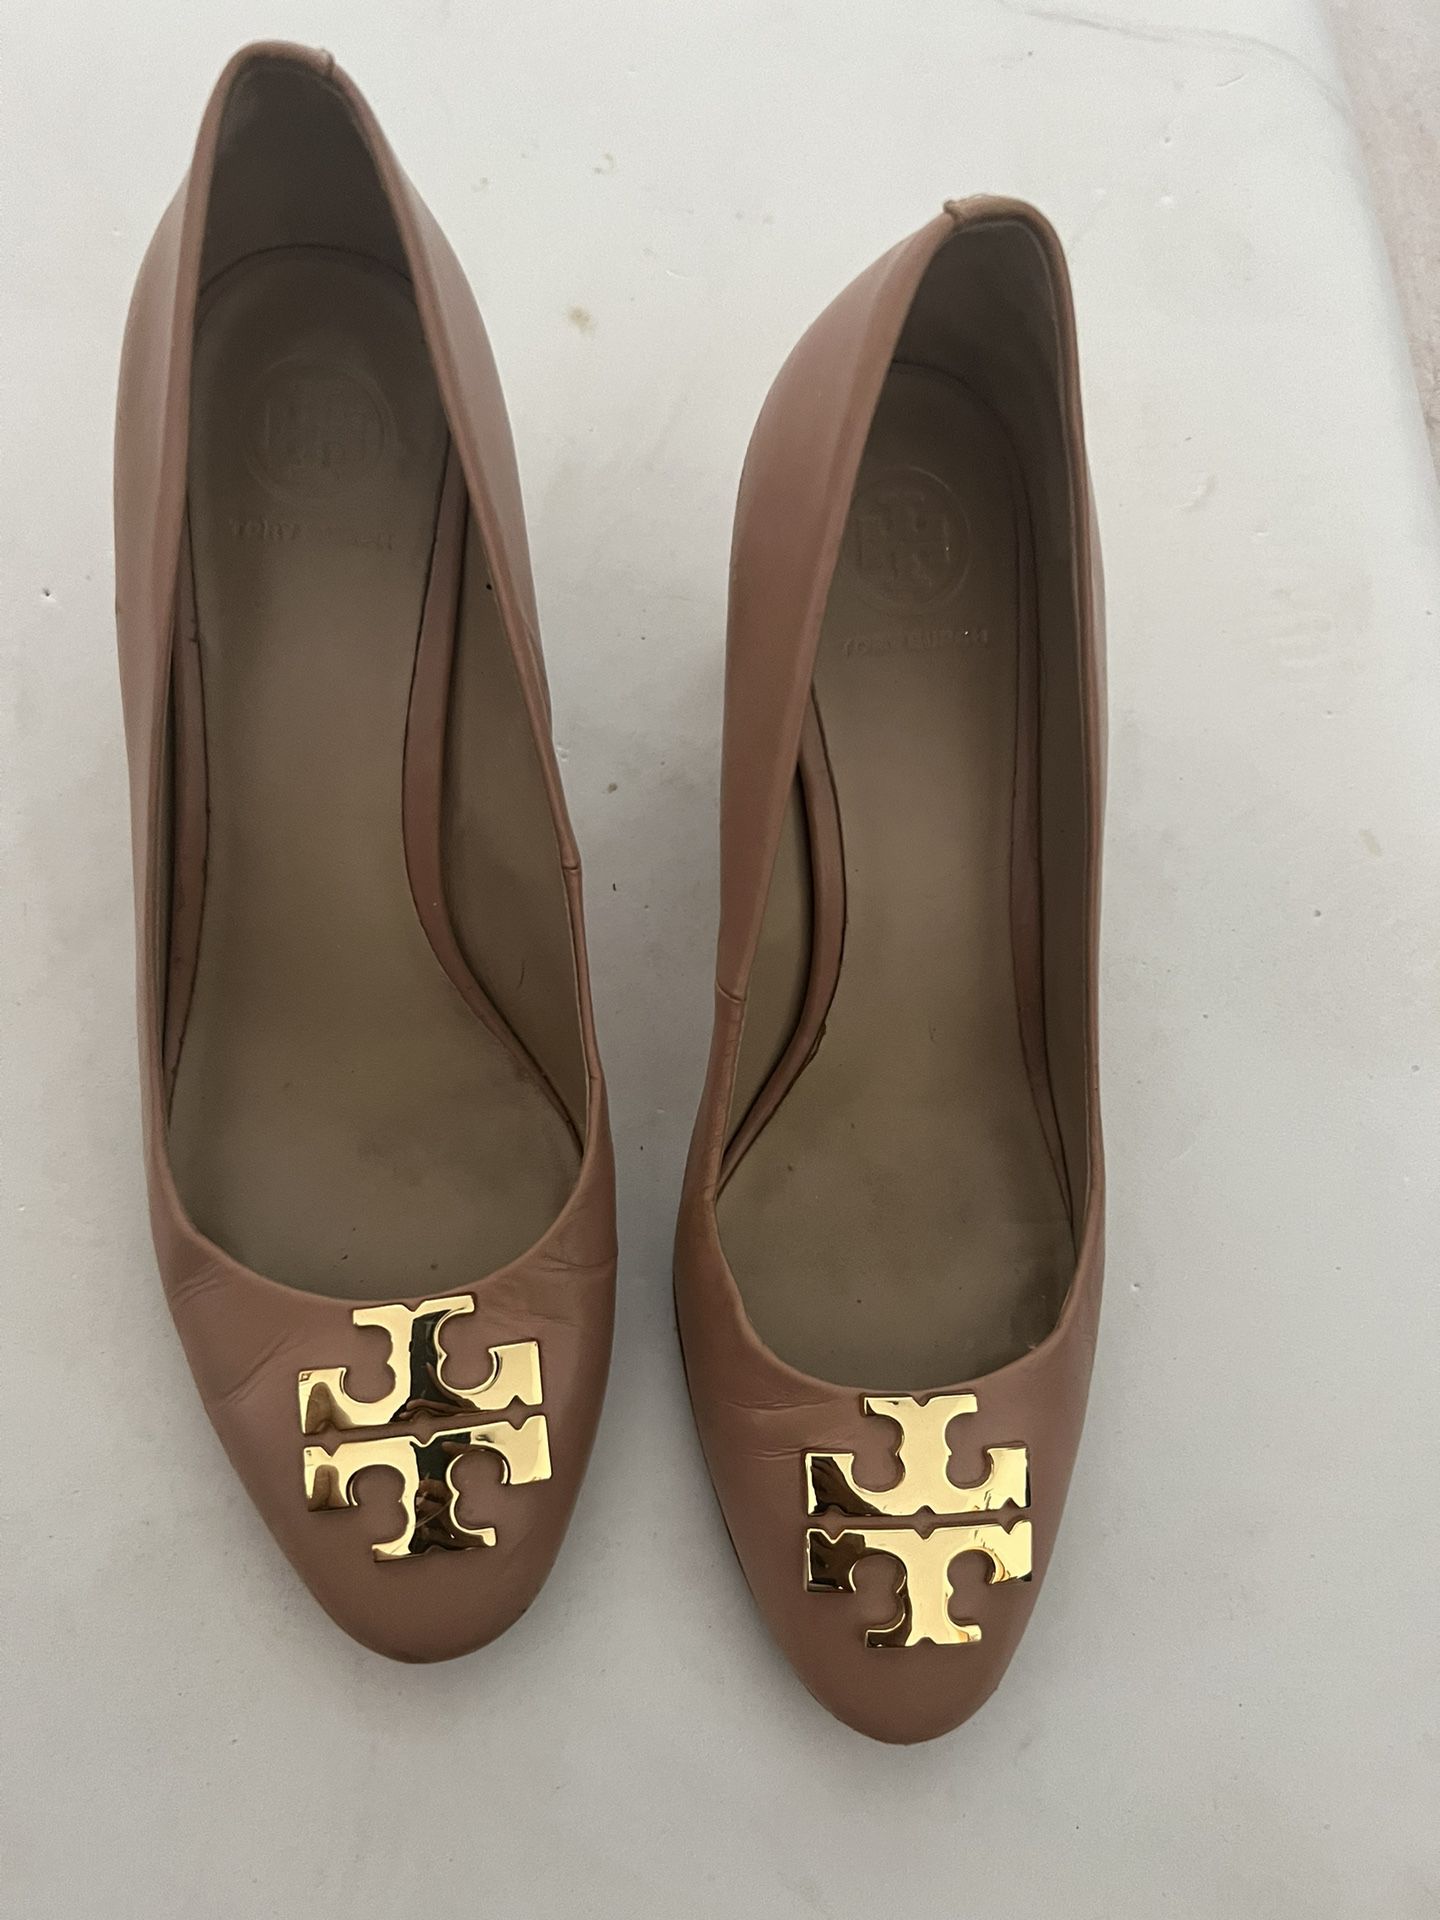 Tory Burch Blush Oak Raleigh Pump runway gold logo dress shoes rare heels 